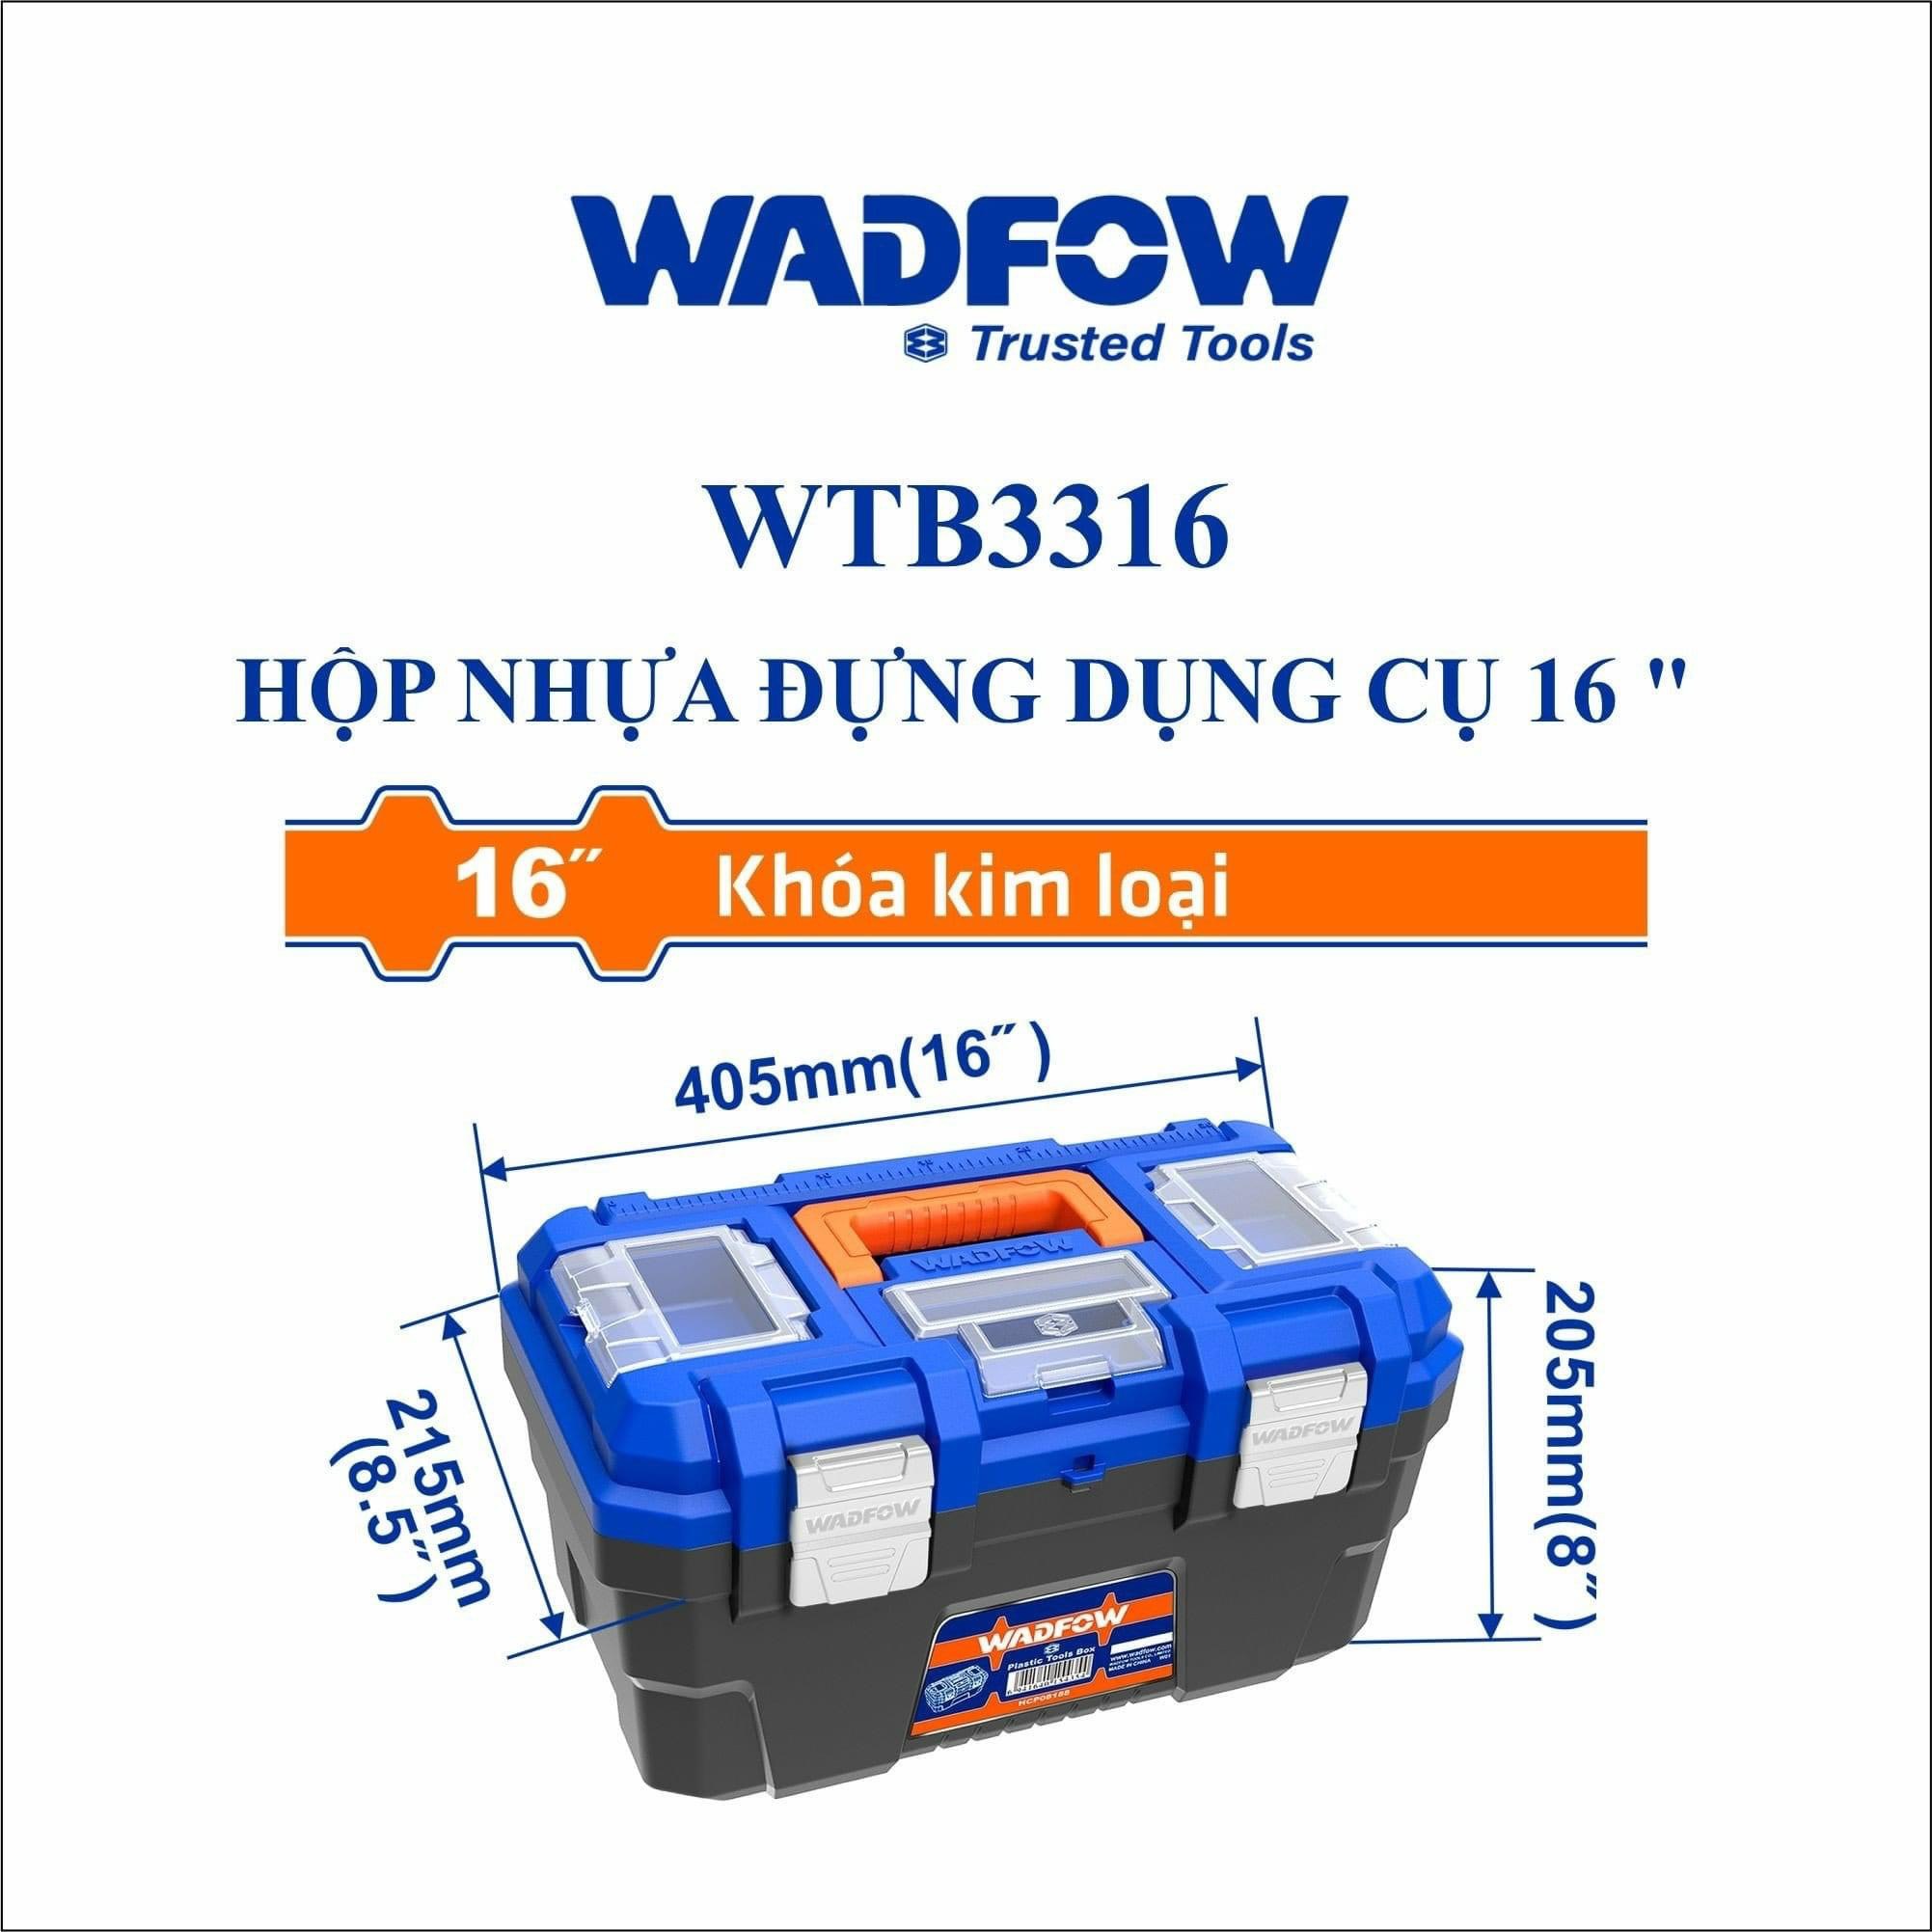 Hộp nhựa đựng dụng cụ 16" WADFOW WTB3316